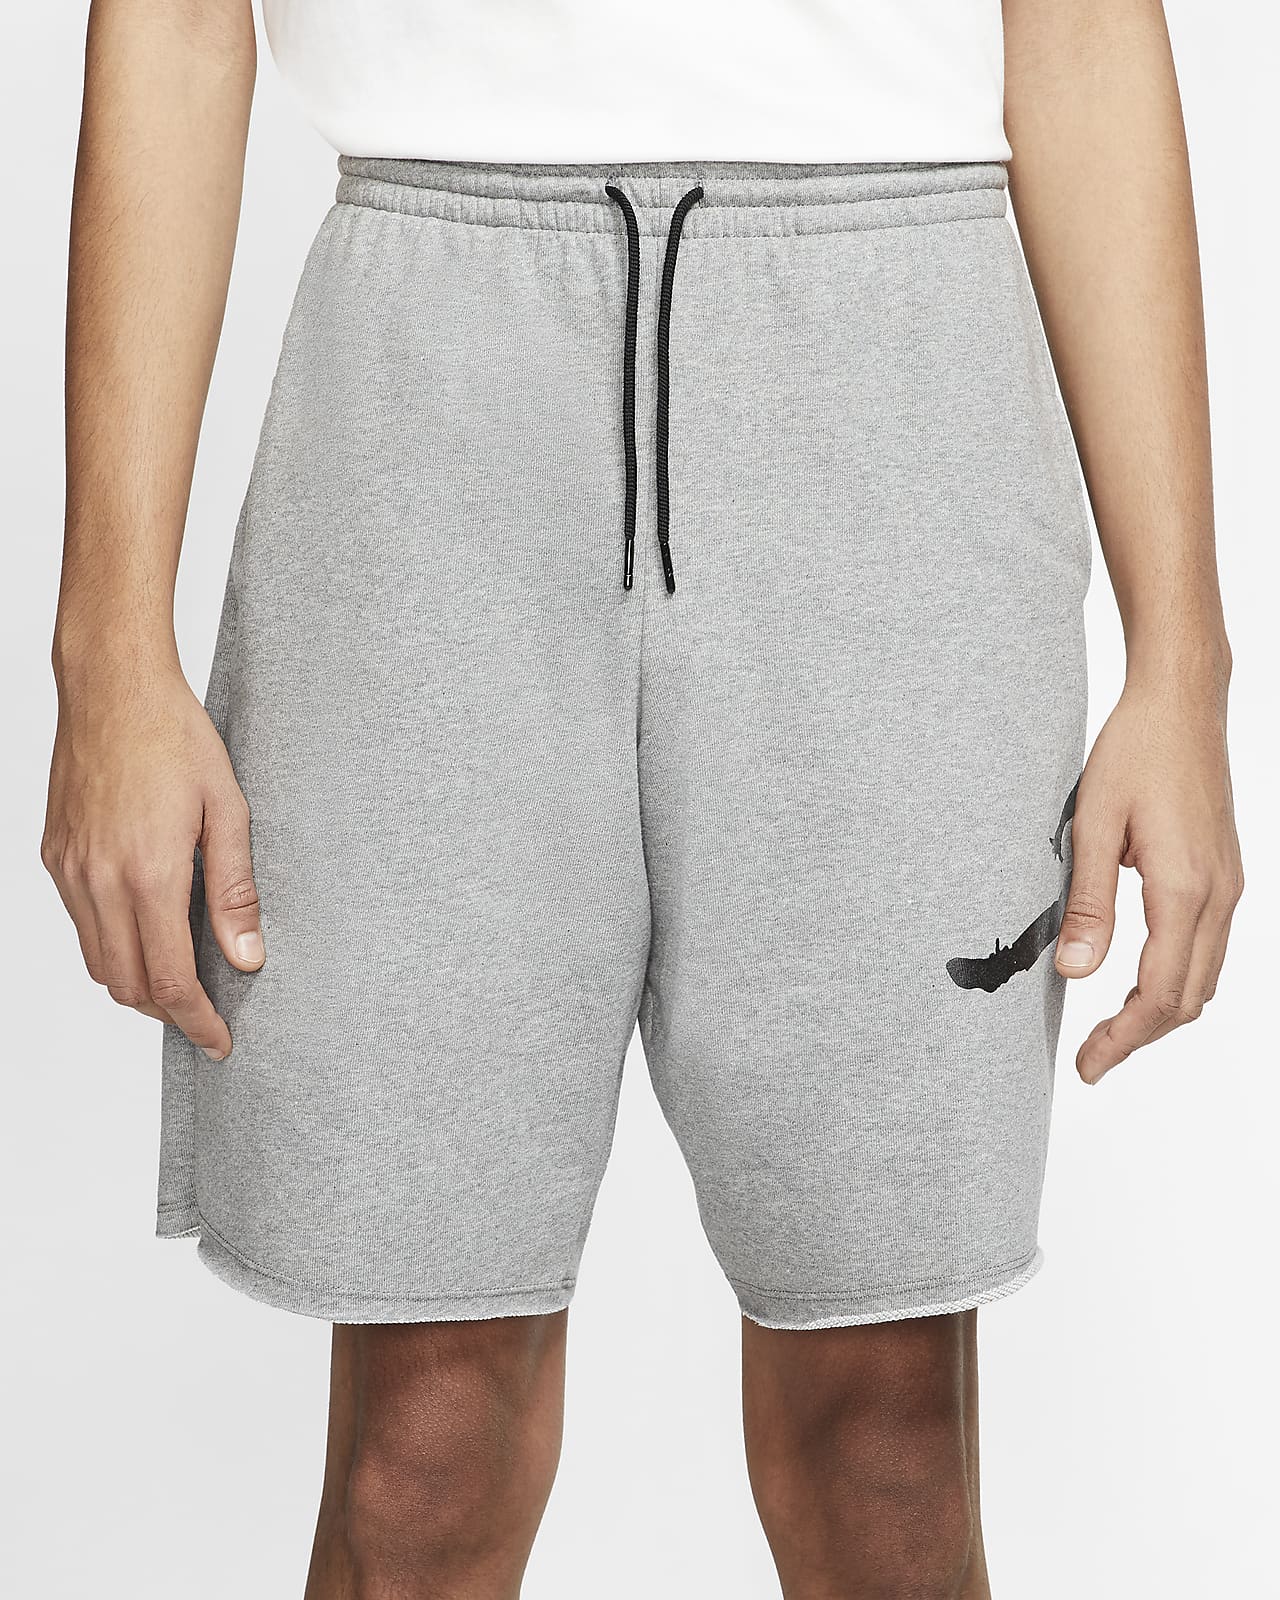 grey jordan sweat shorts